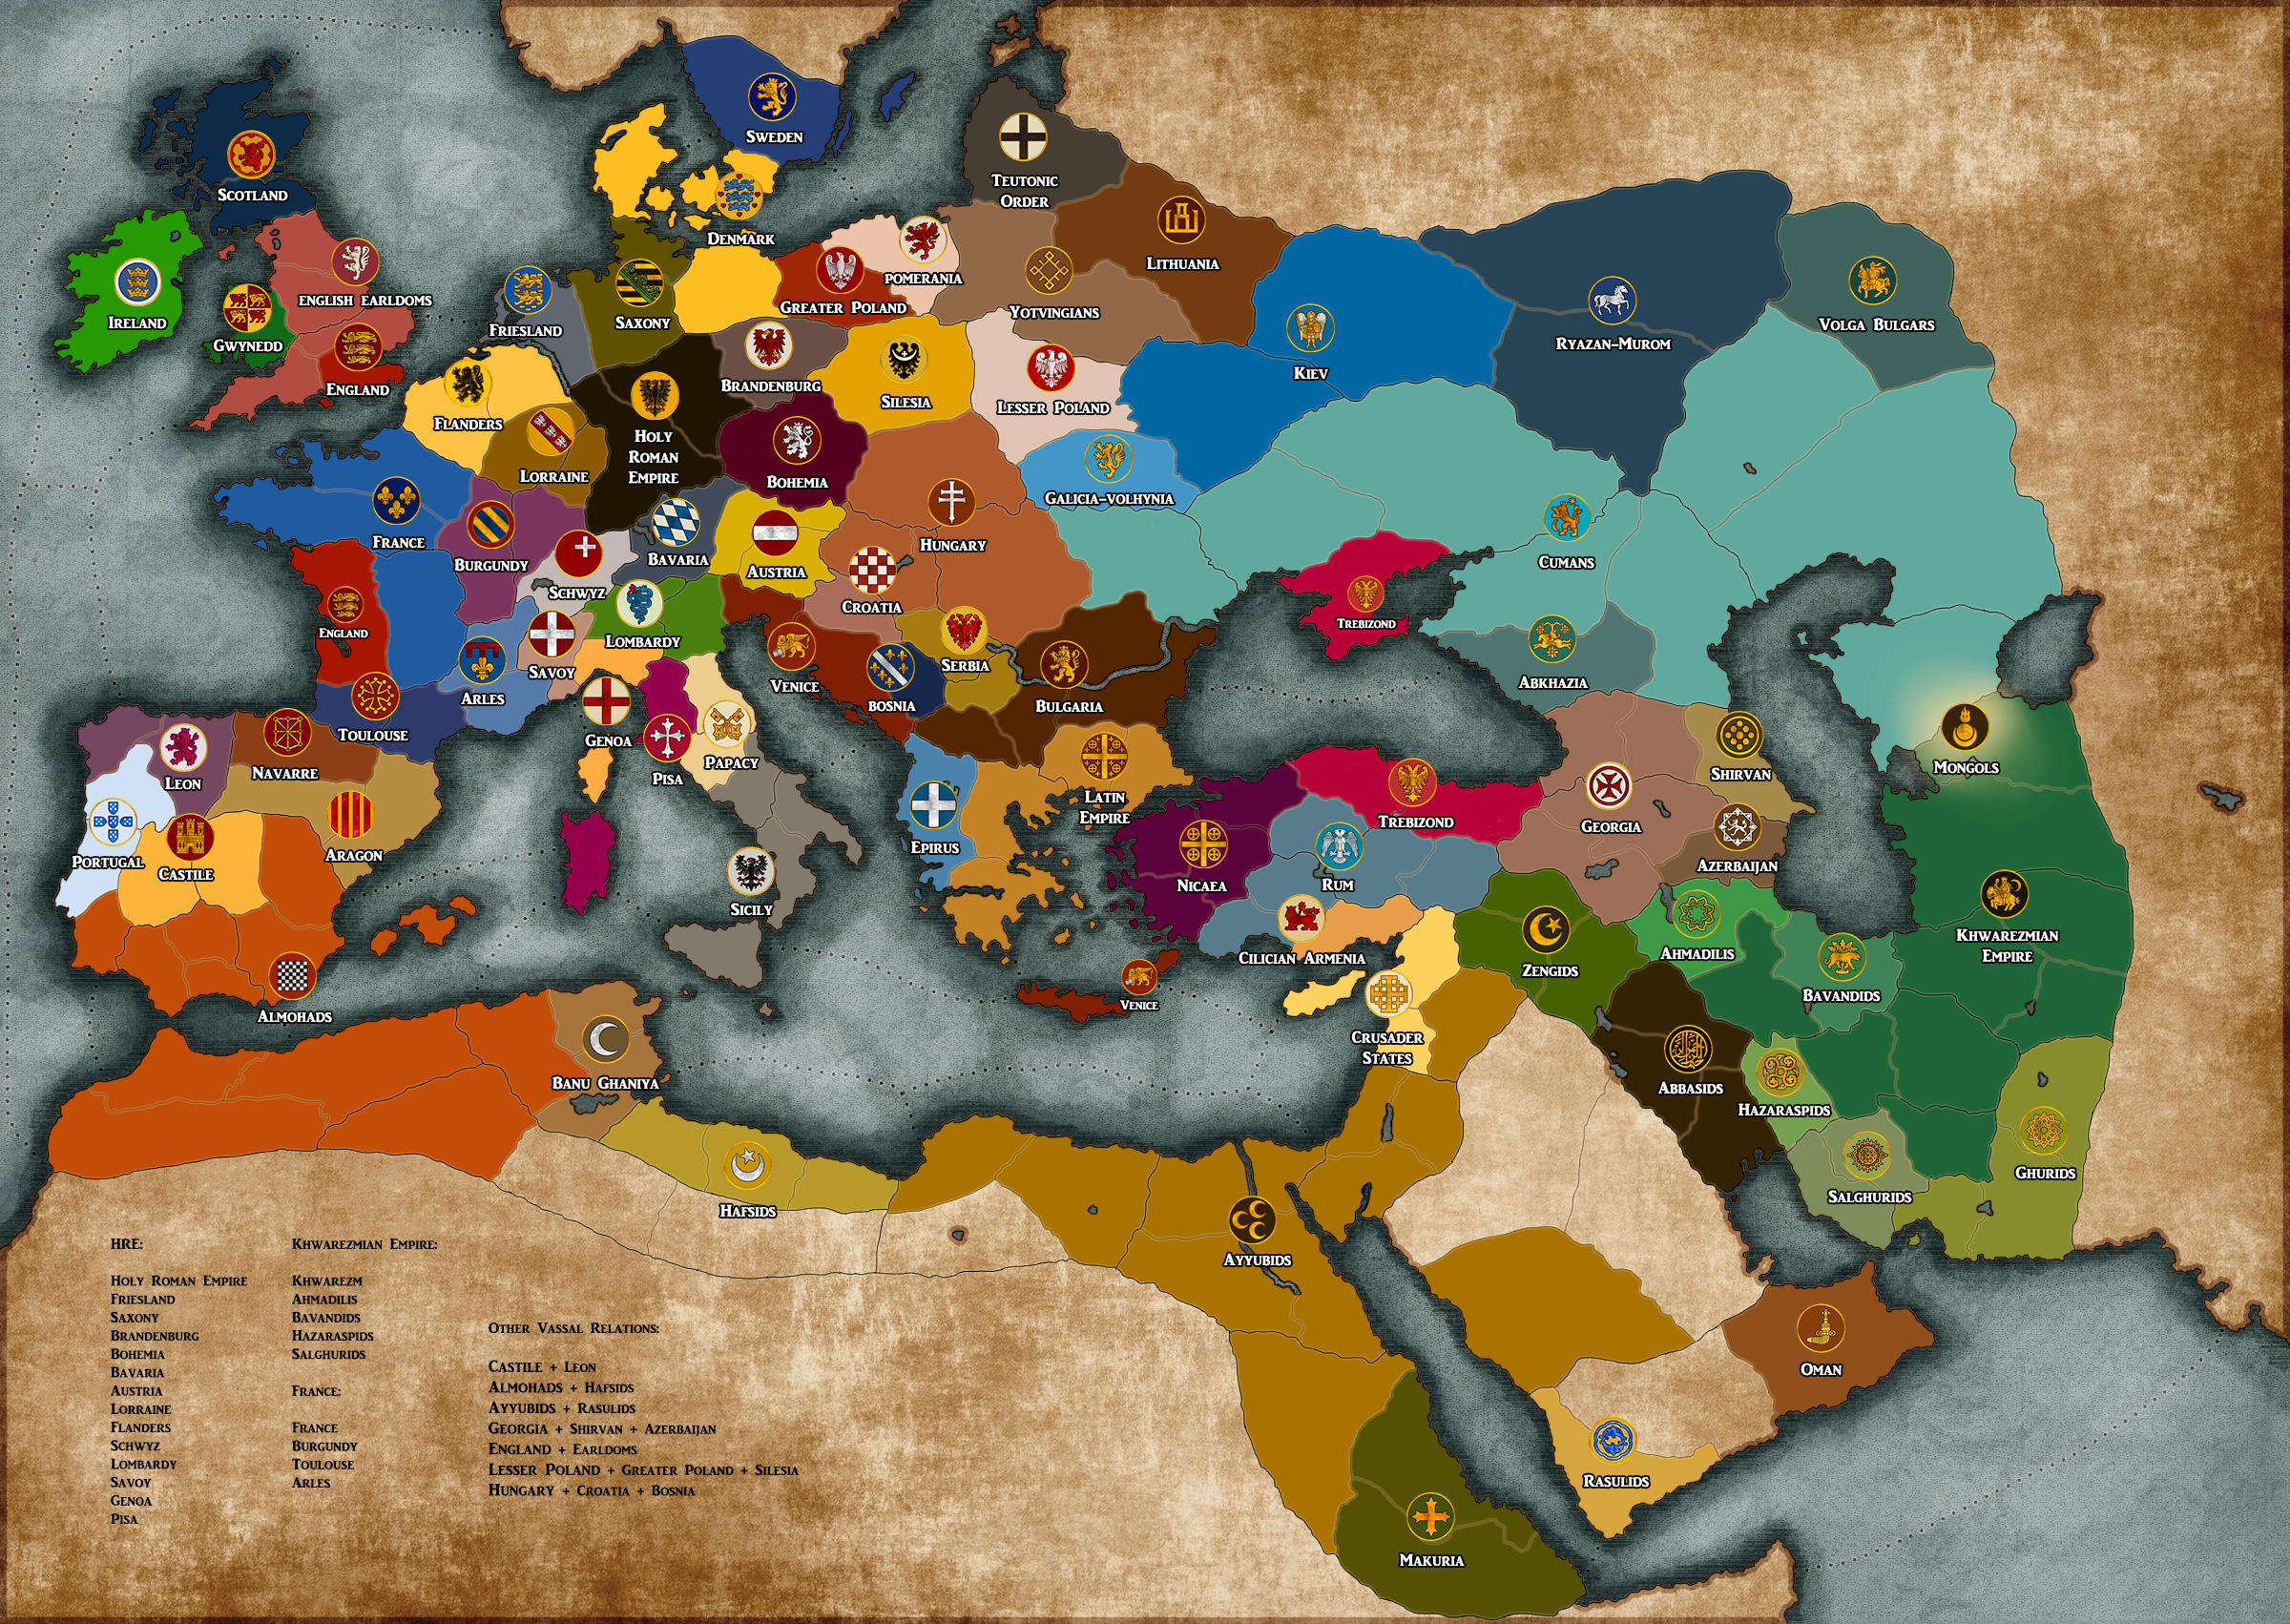 medieval kingdoms total war mod